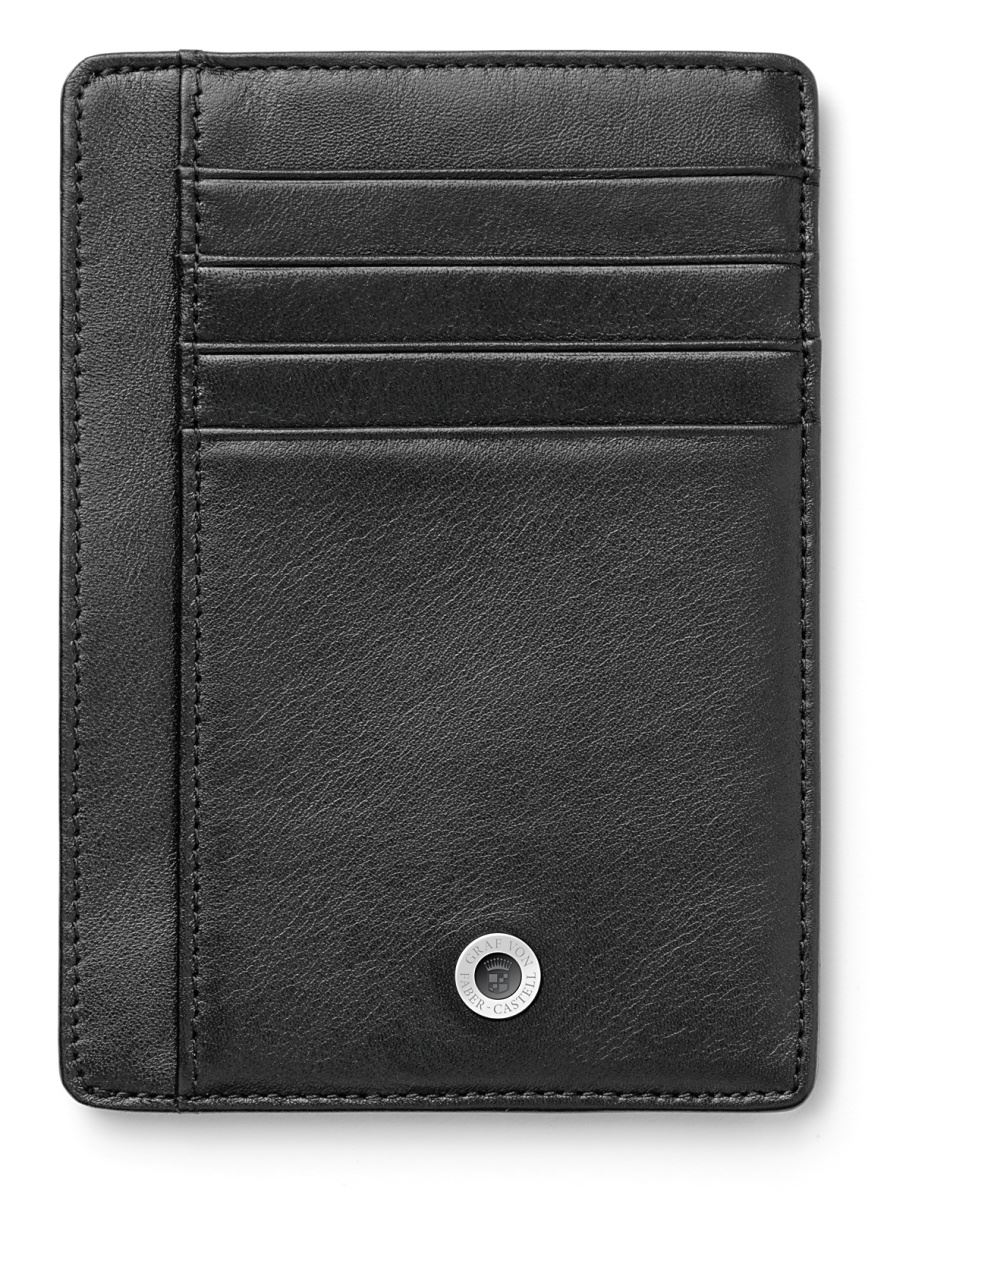 Graf-von-Faber-Castell - Porta cartão de crédito, preto